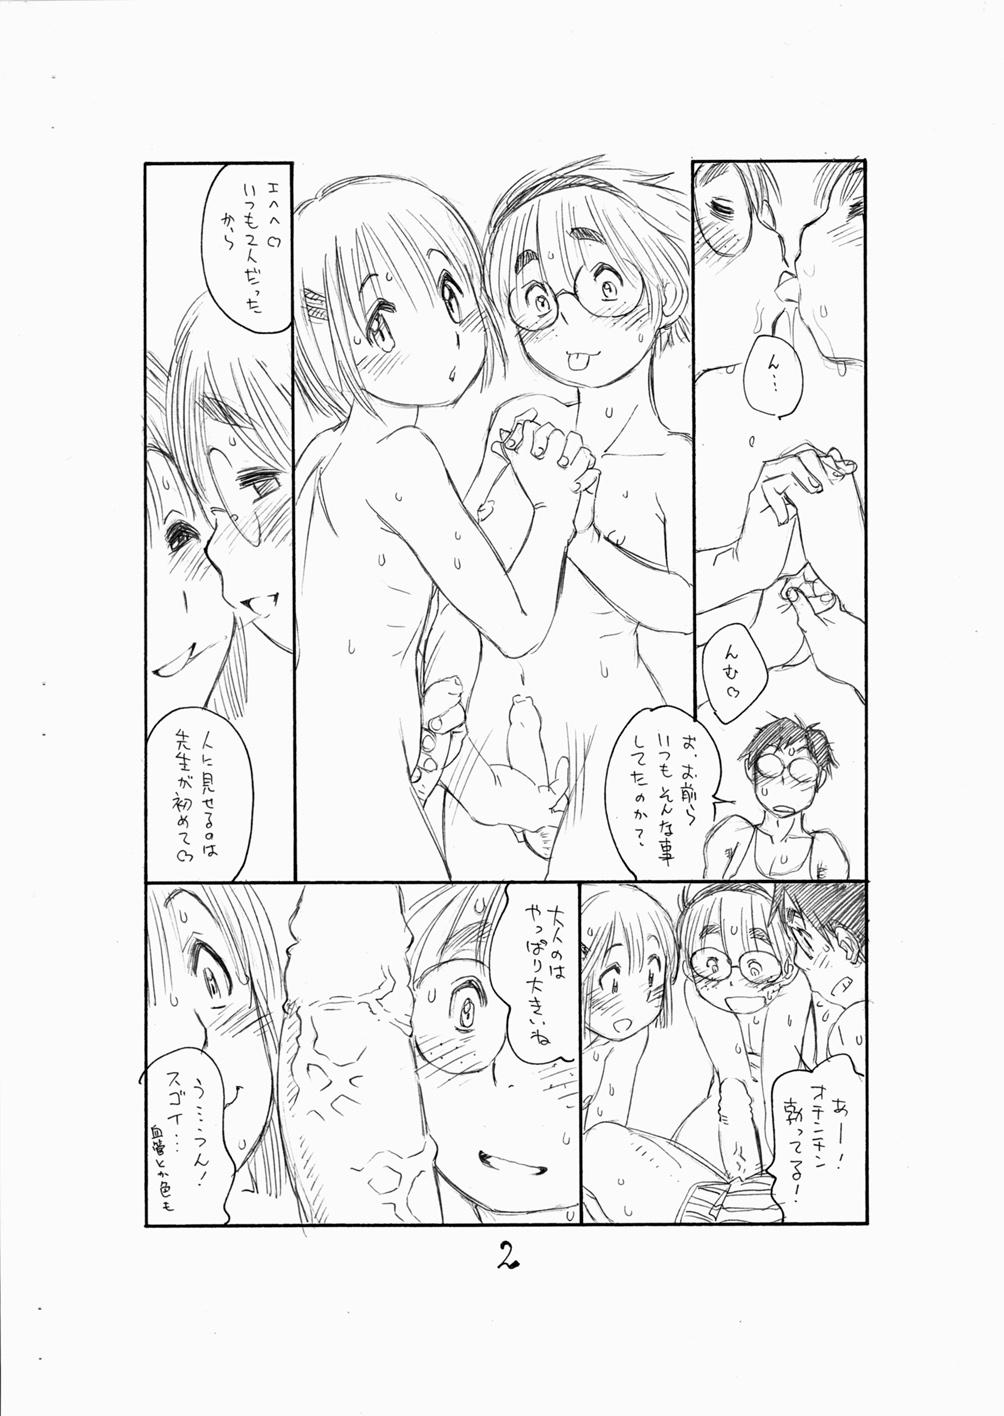 Dicksucking Bokutachi Otokonoko 3 - Hourou musuko Cuckolding - Page 4